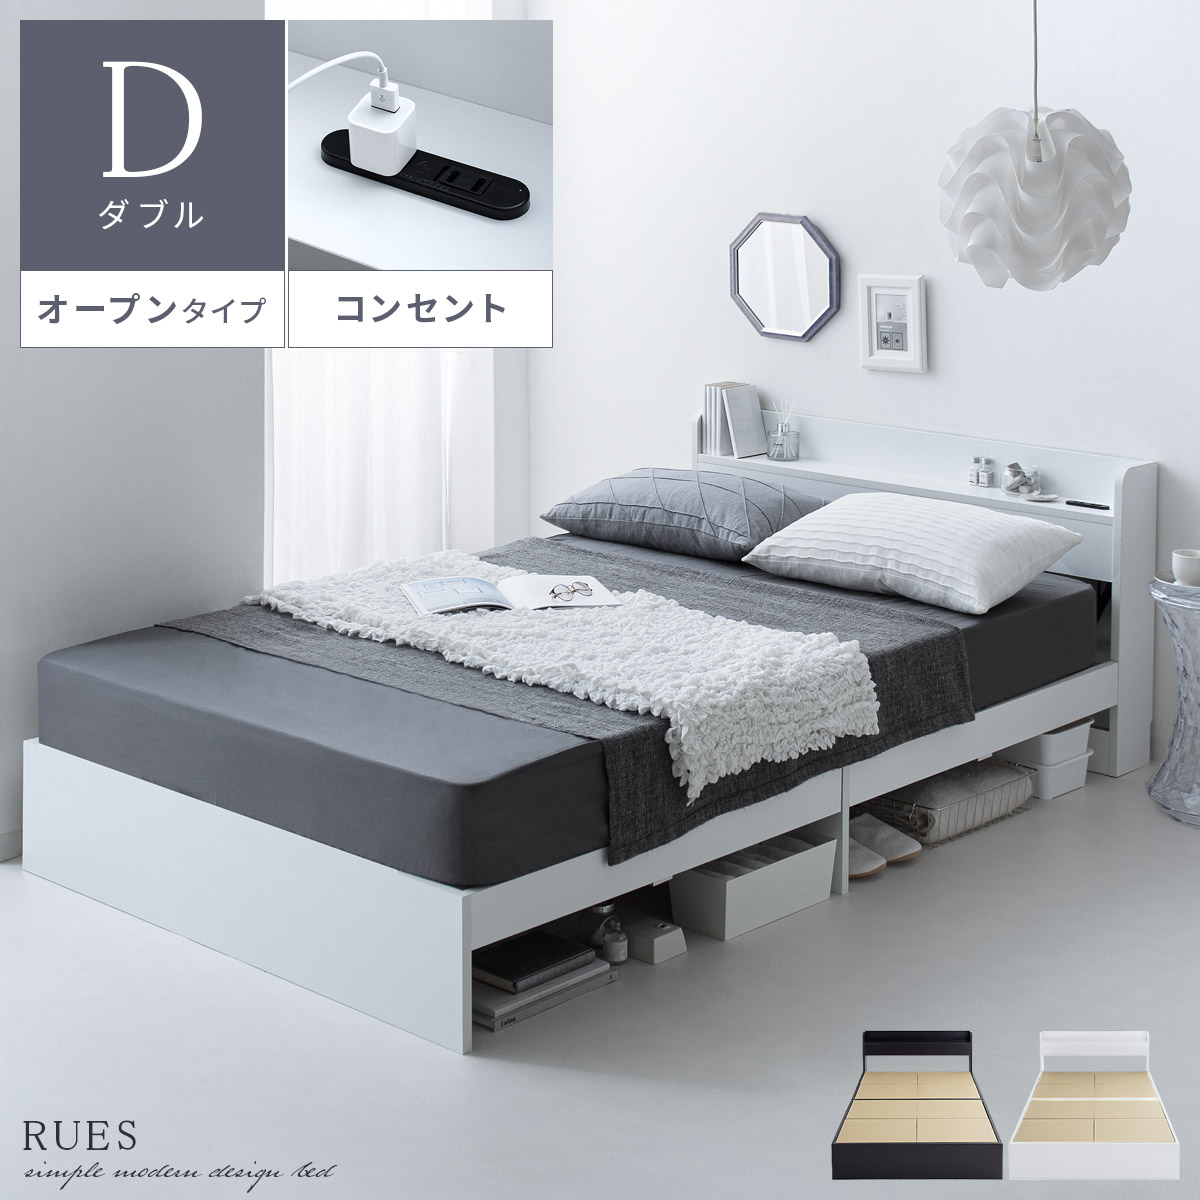 [ダブル] オープンタイプ | ベッドフレーム RUES〔ルース〕 フレームのみ単体販売 ダブルサイズ 棚付き コンセント付き ベッド下収納 シンプル  ブラック ホワイト